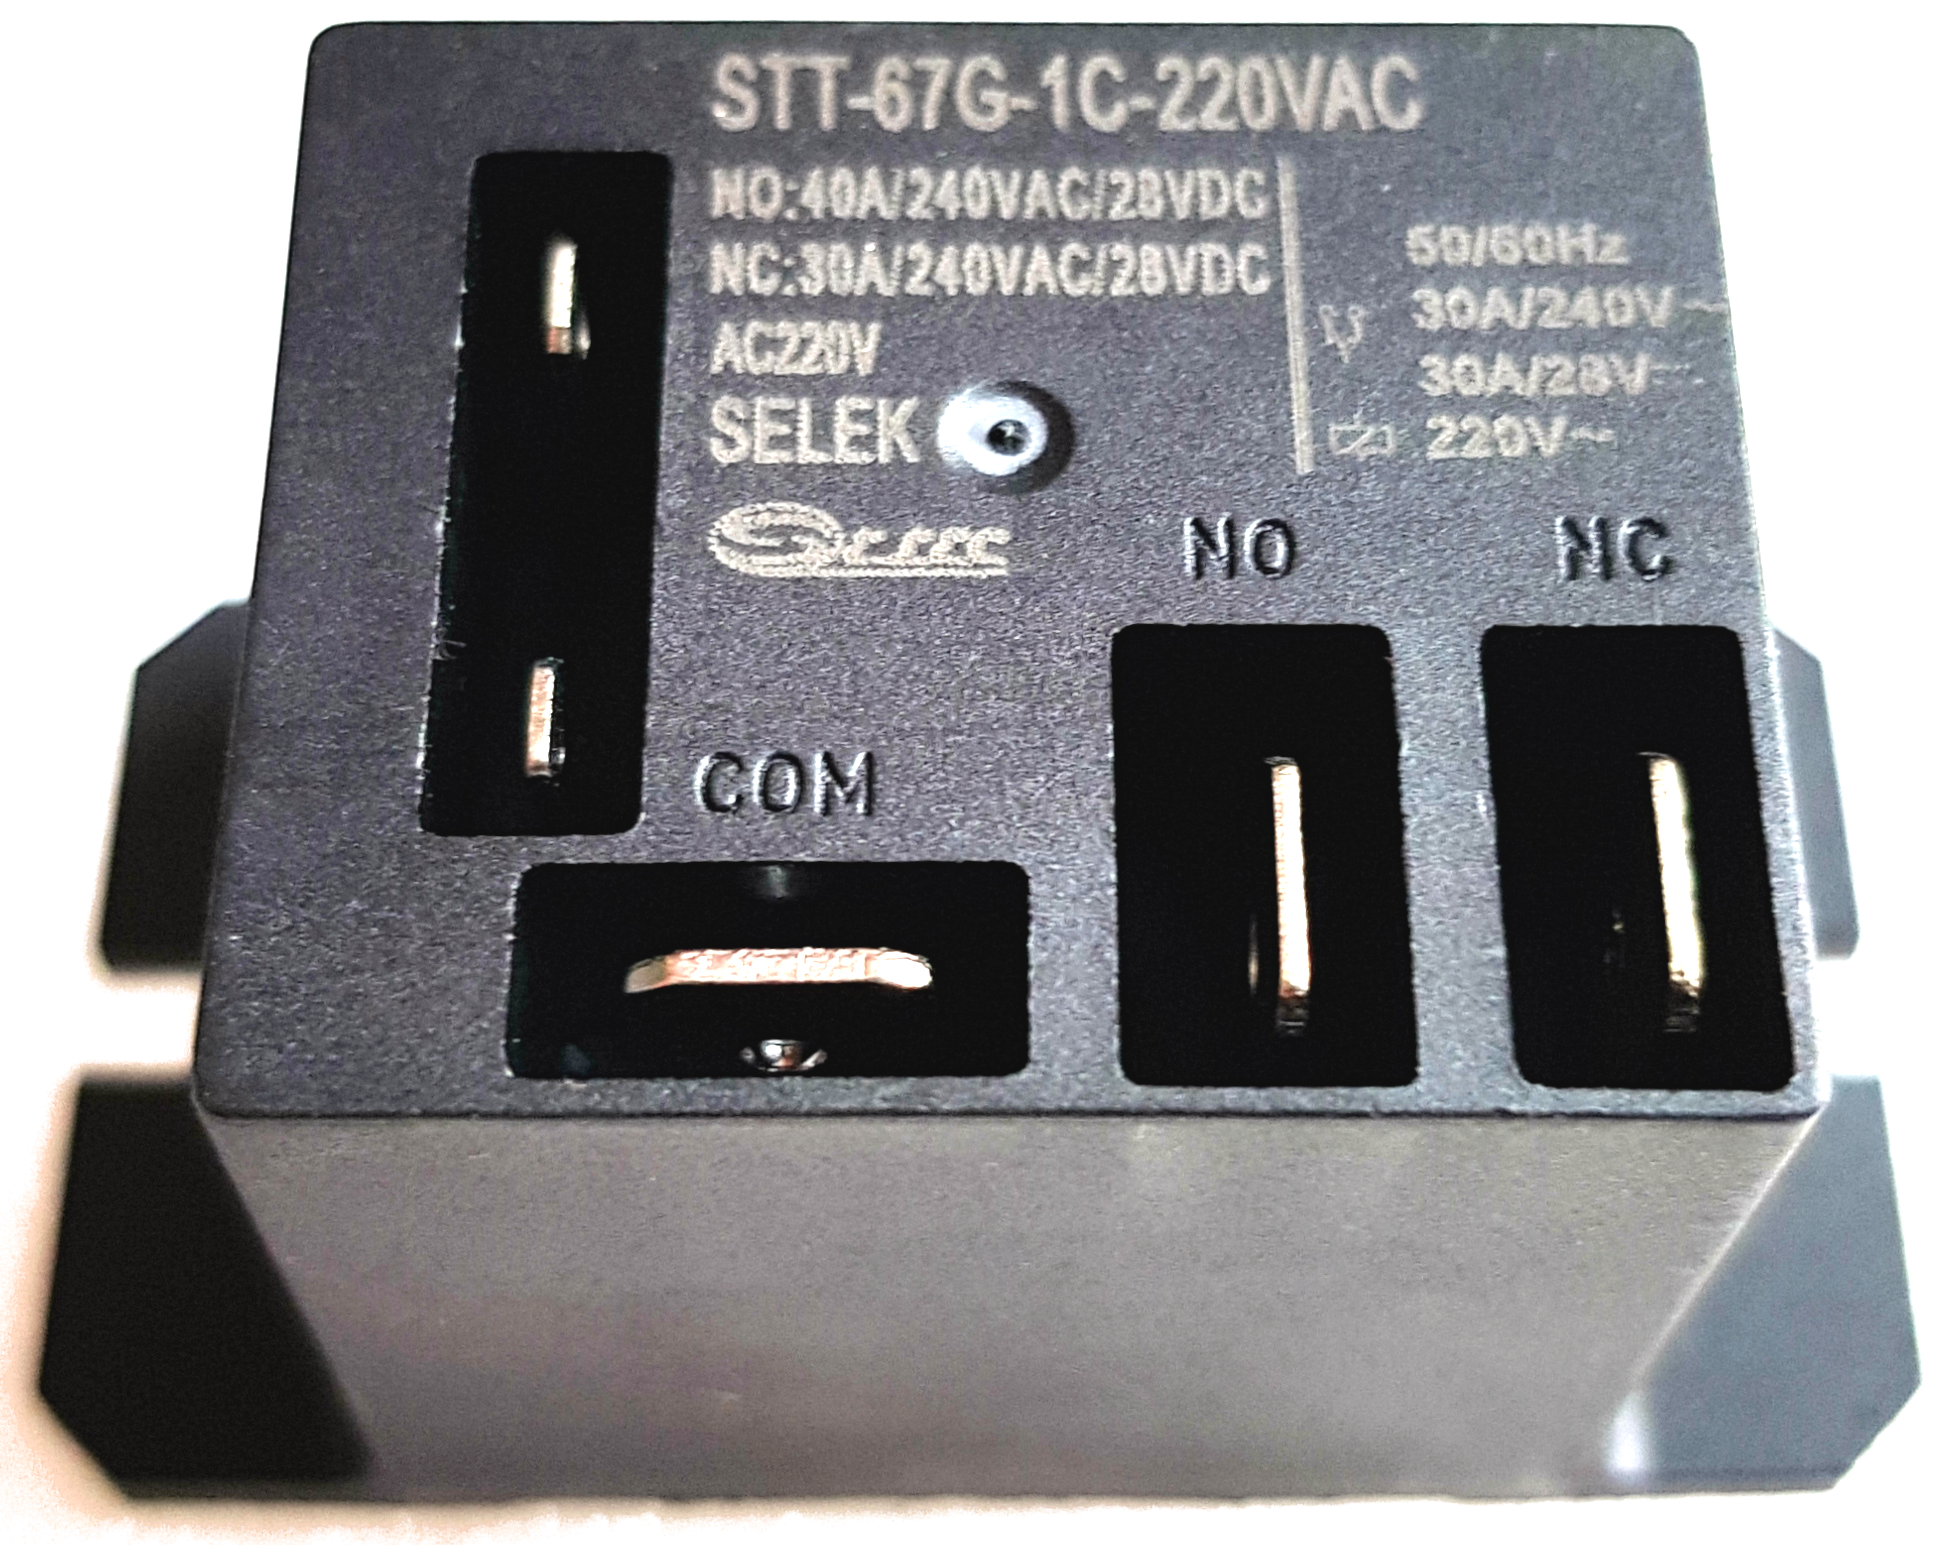 Электромагнитное реле купить. Электромагнитное реле STT-67g-1c-220vac. STT-67g-1c-220vac. Реле STT-67g-1c-220vac. Реле  30f -2c-220vac(реле силовое) ИЗТТ.